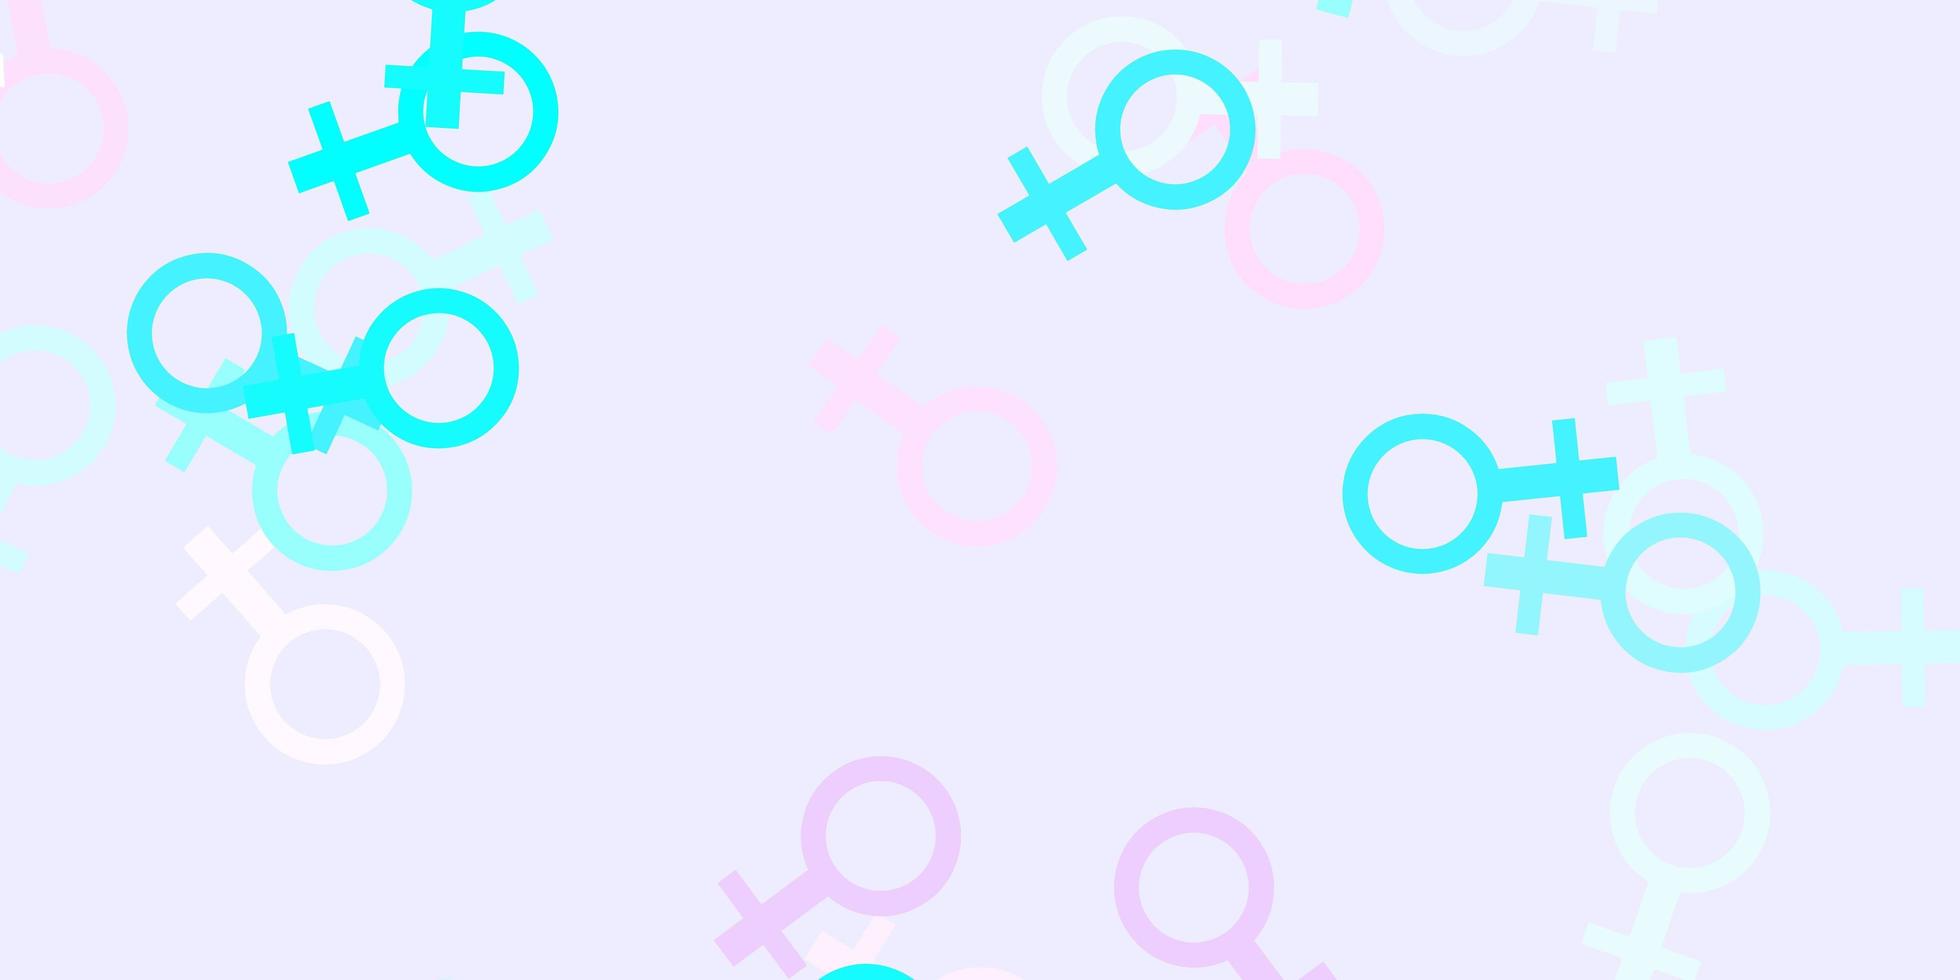 trama vettoriale blu rosa chiaro con simboli dei diritti delle donne